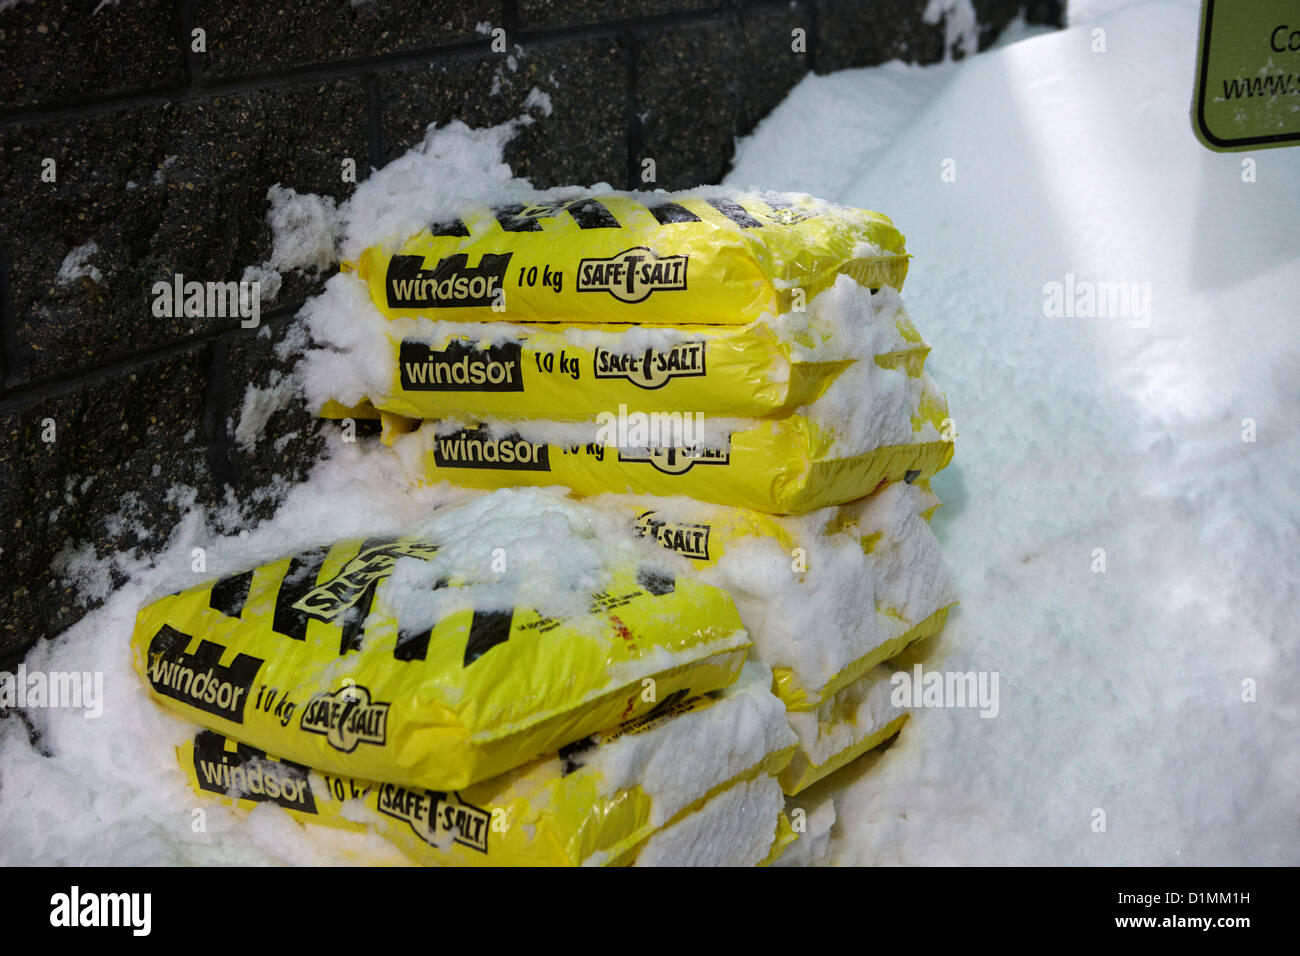 Sacos de sal cubierto de nieve fuera de una tienda en Saskatoon, Saskatchewan Canadá Foto de stock